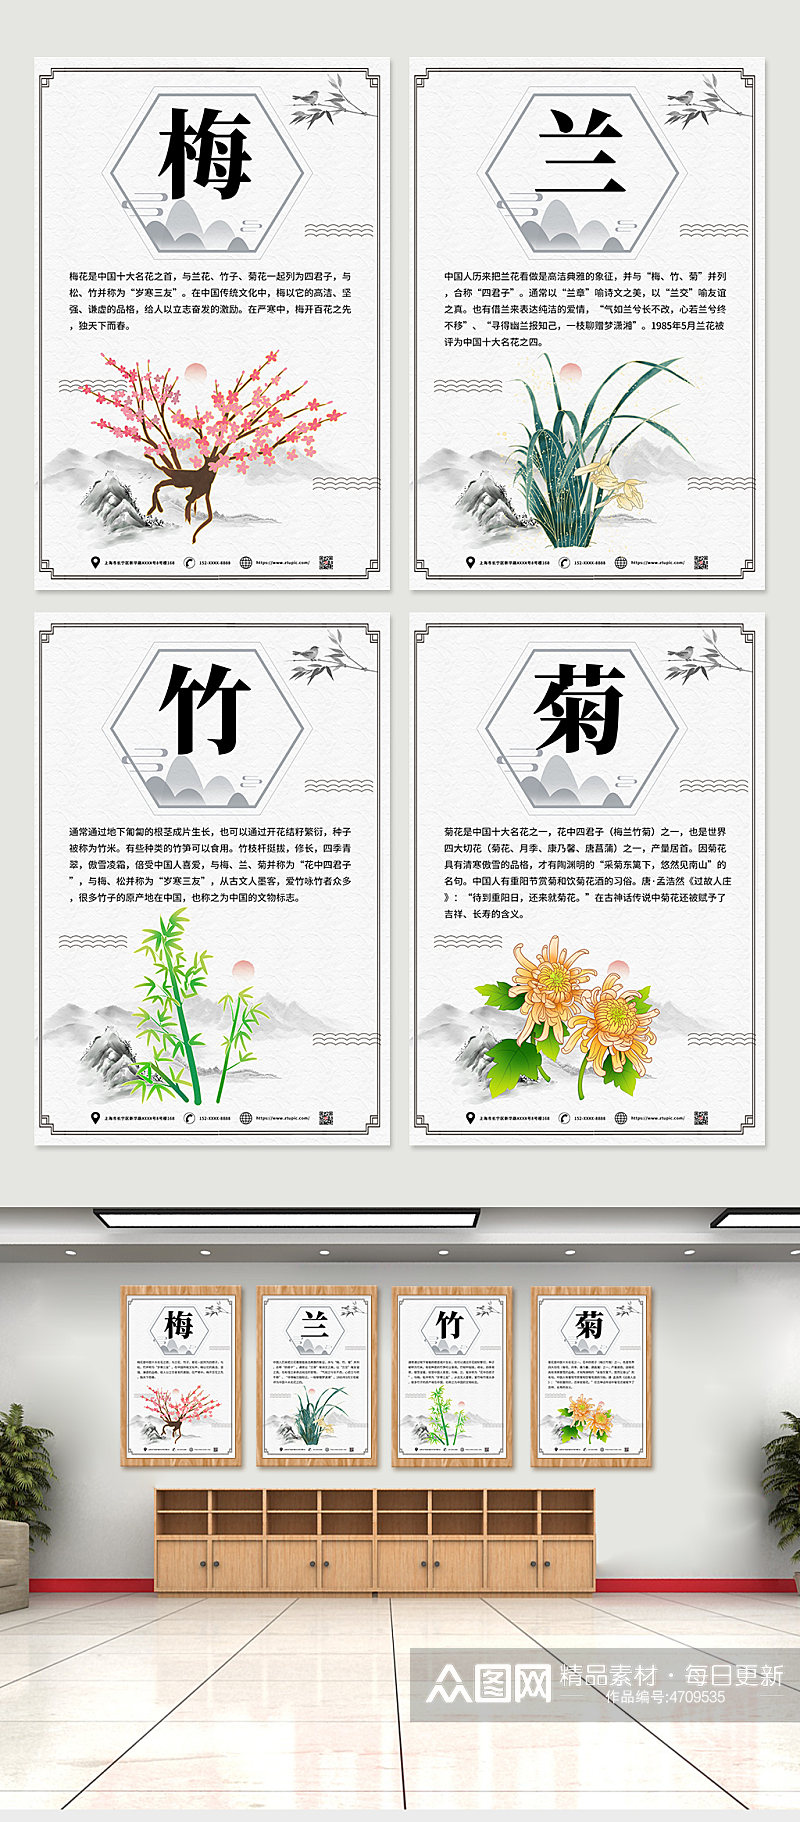 手绘中国风梅兰竹菊系列海报素材